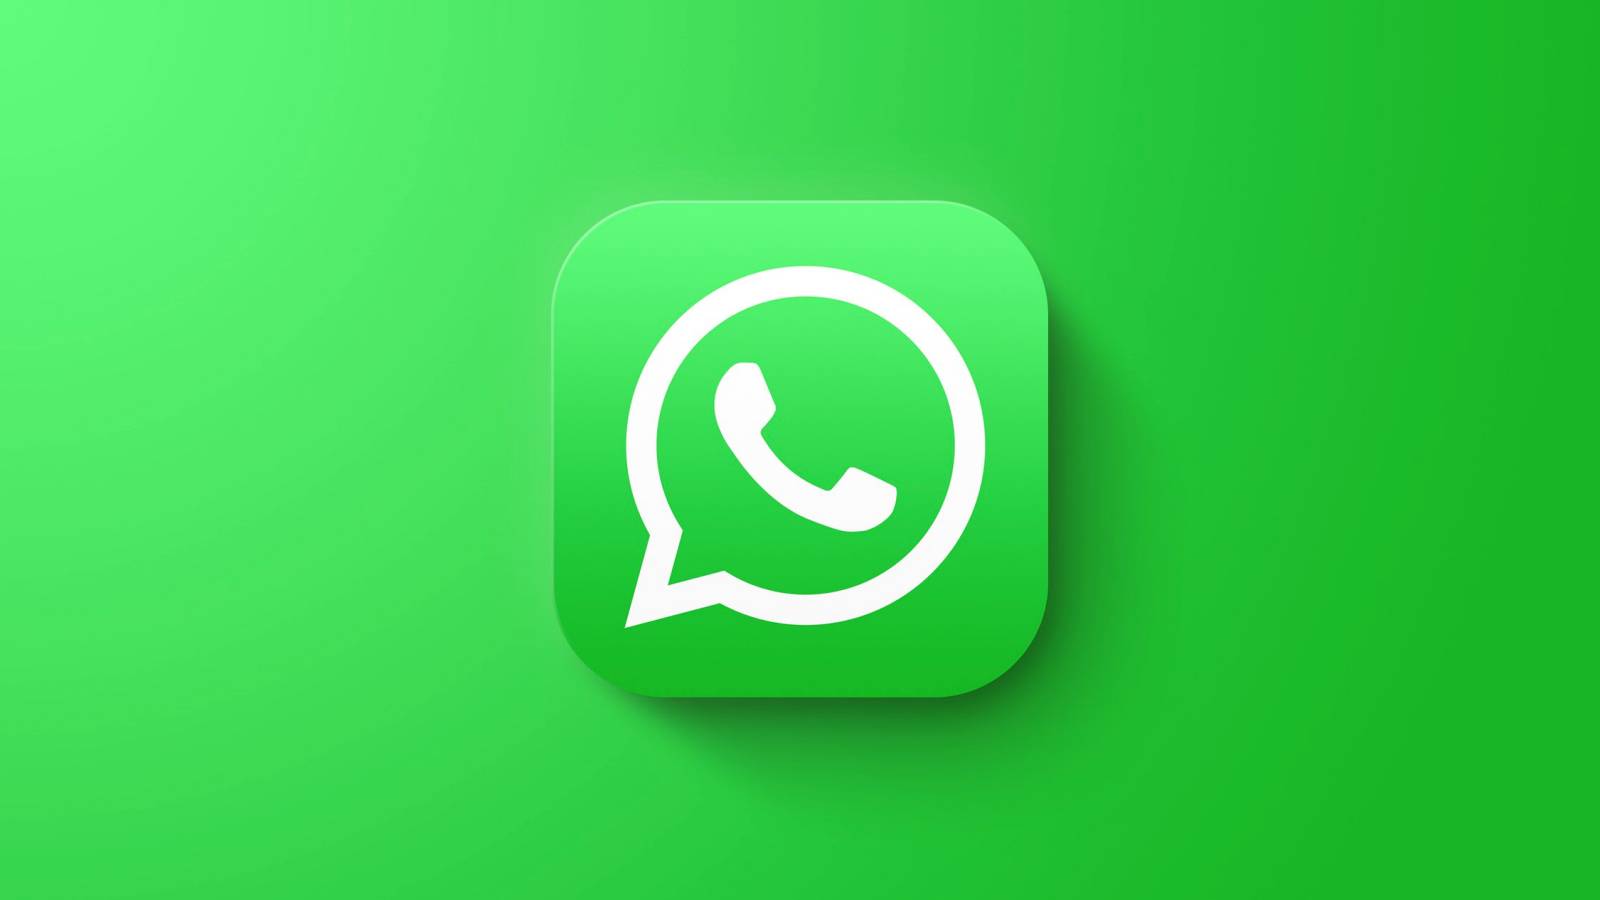 Notifica UFFICIALE WhatsApp 2 Grandi Cambiamenti iPhone Android